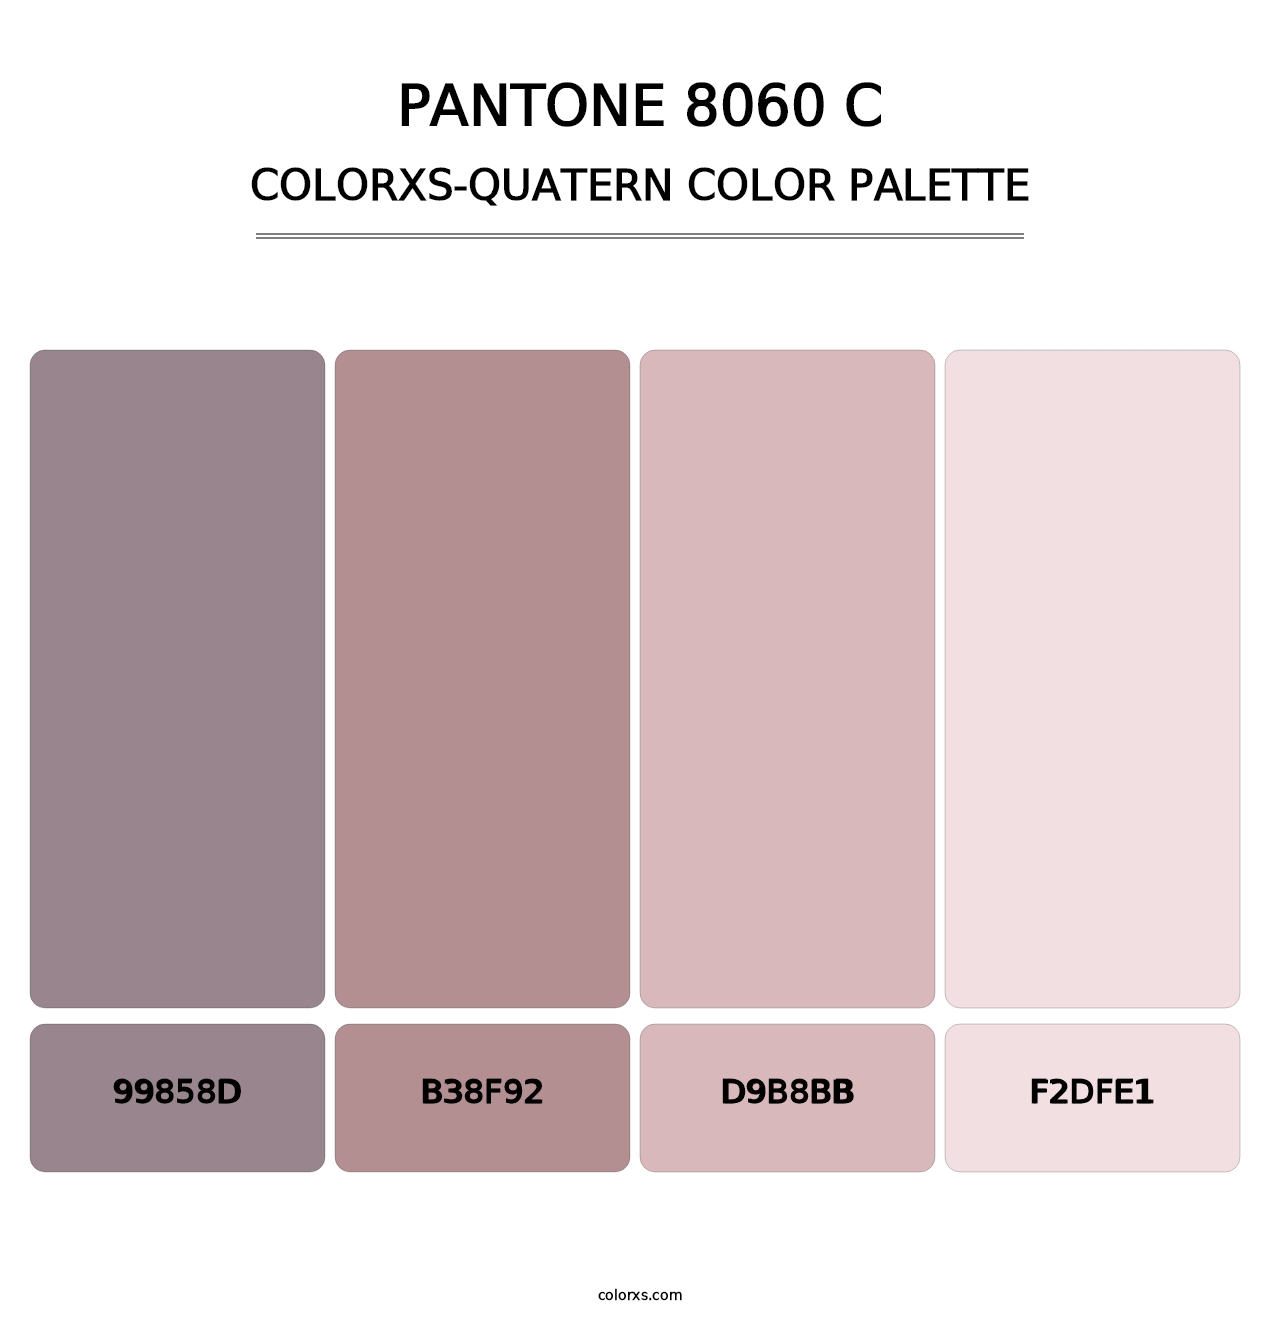 PANTONE 8060 C - Colorxs Quatern Palette